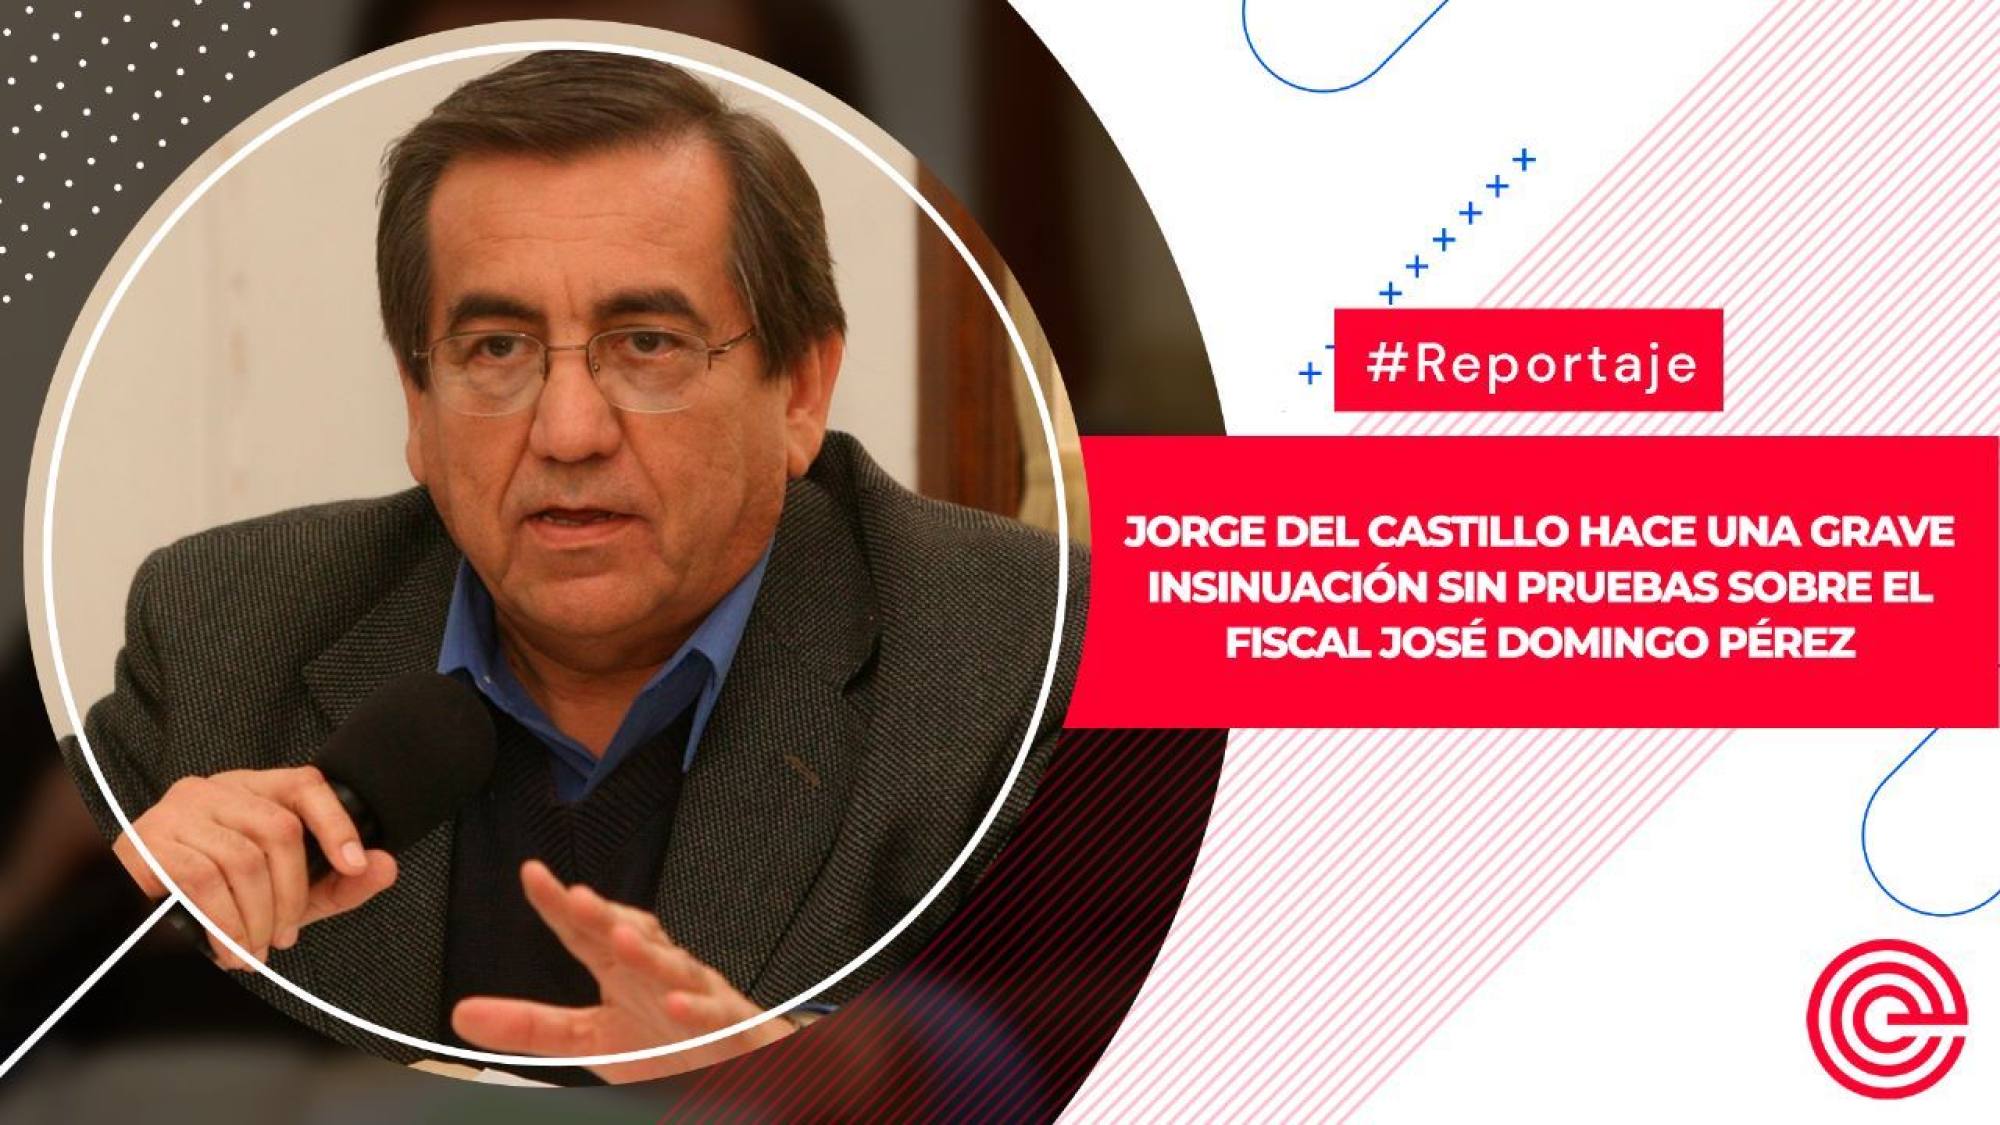 Jorge del Castillo hace una grave insinuación sin pruebas sobre el fiscal José Domingo Pérez, Epicentro TV